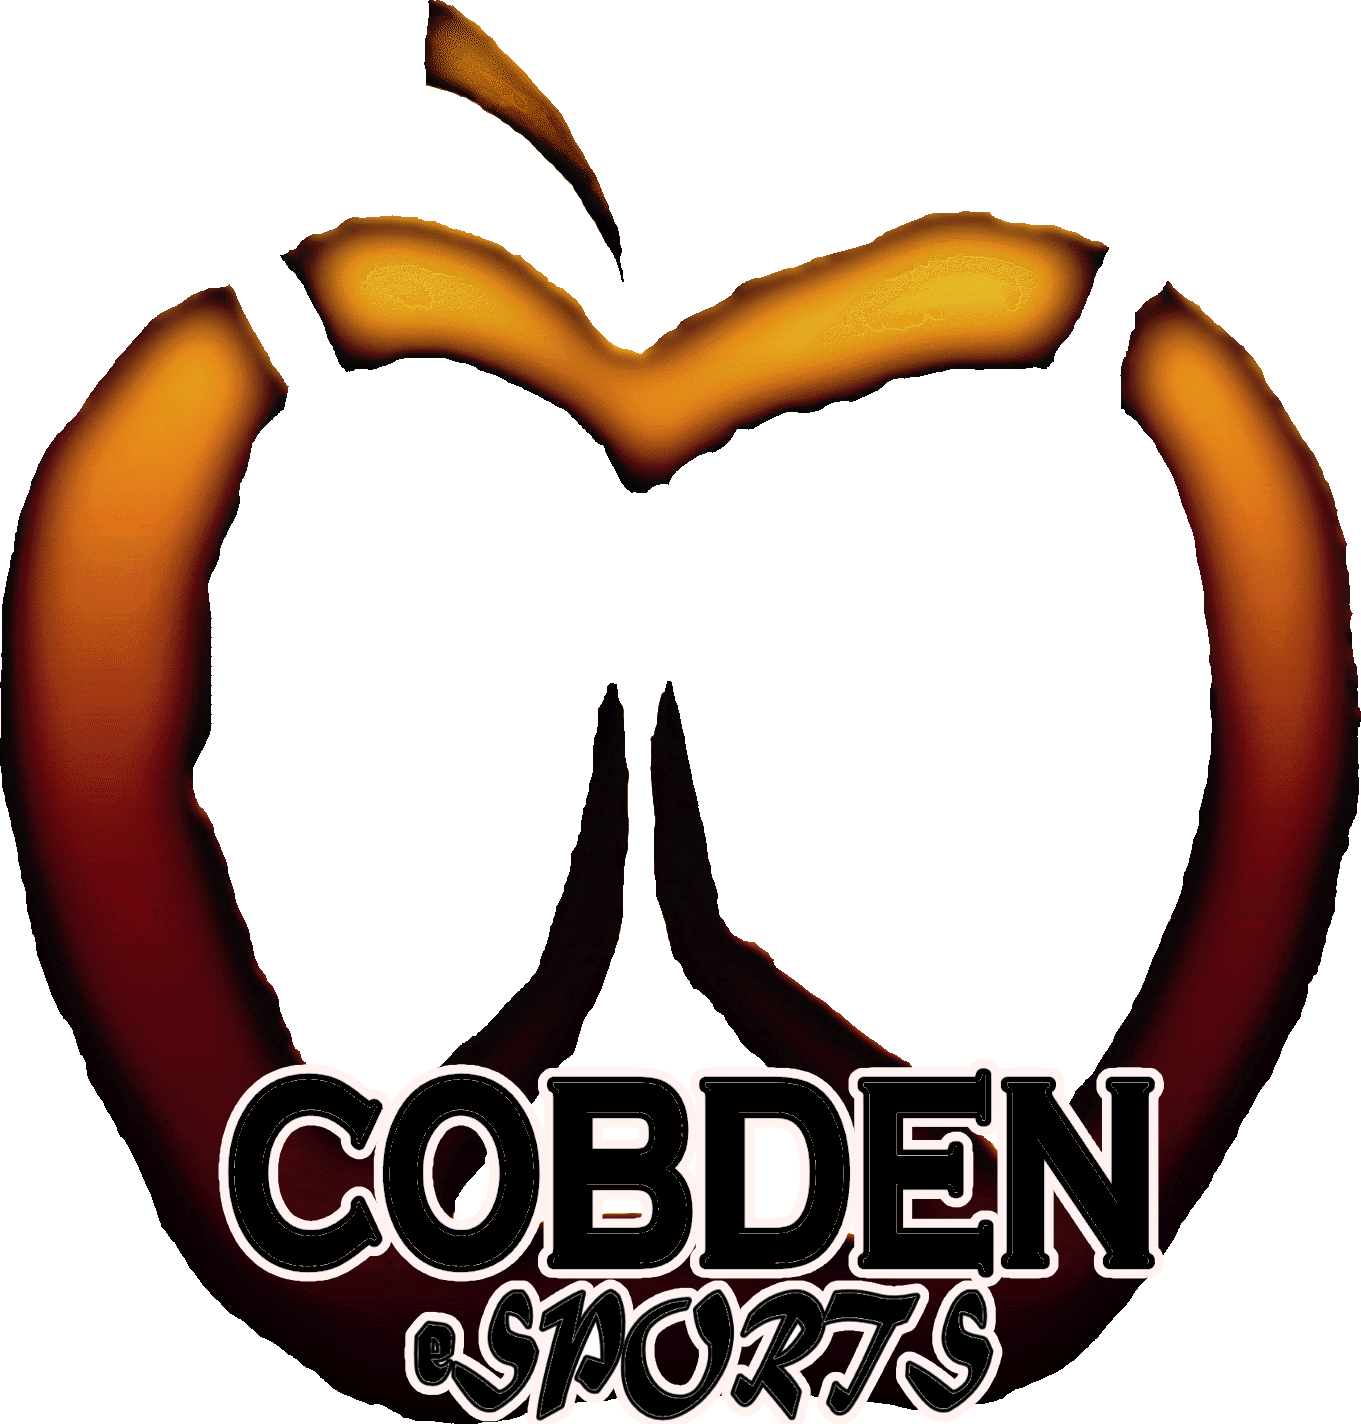 Cobden Esports